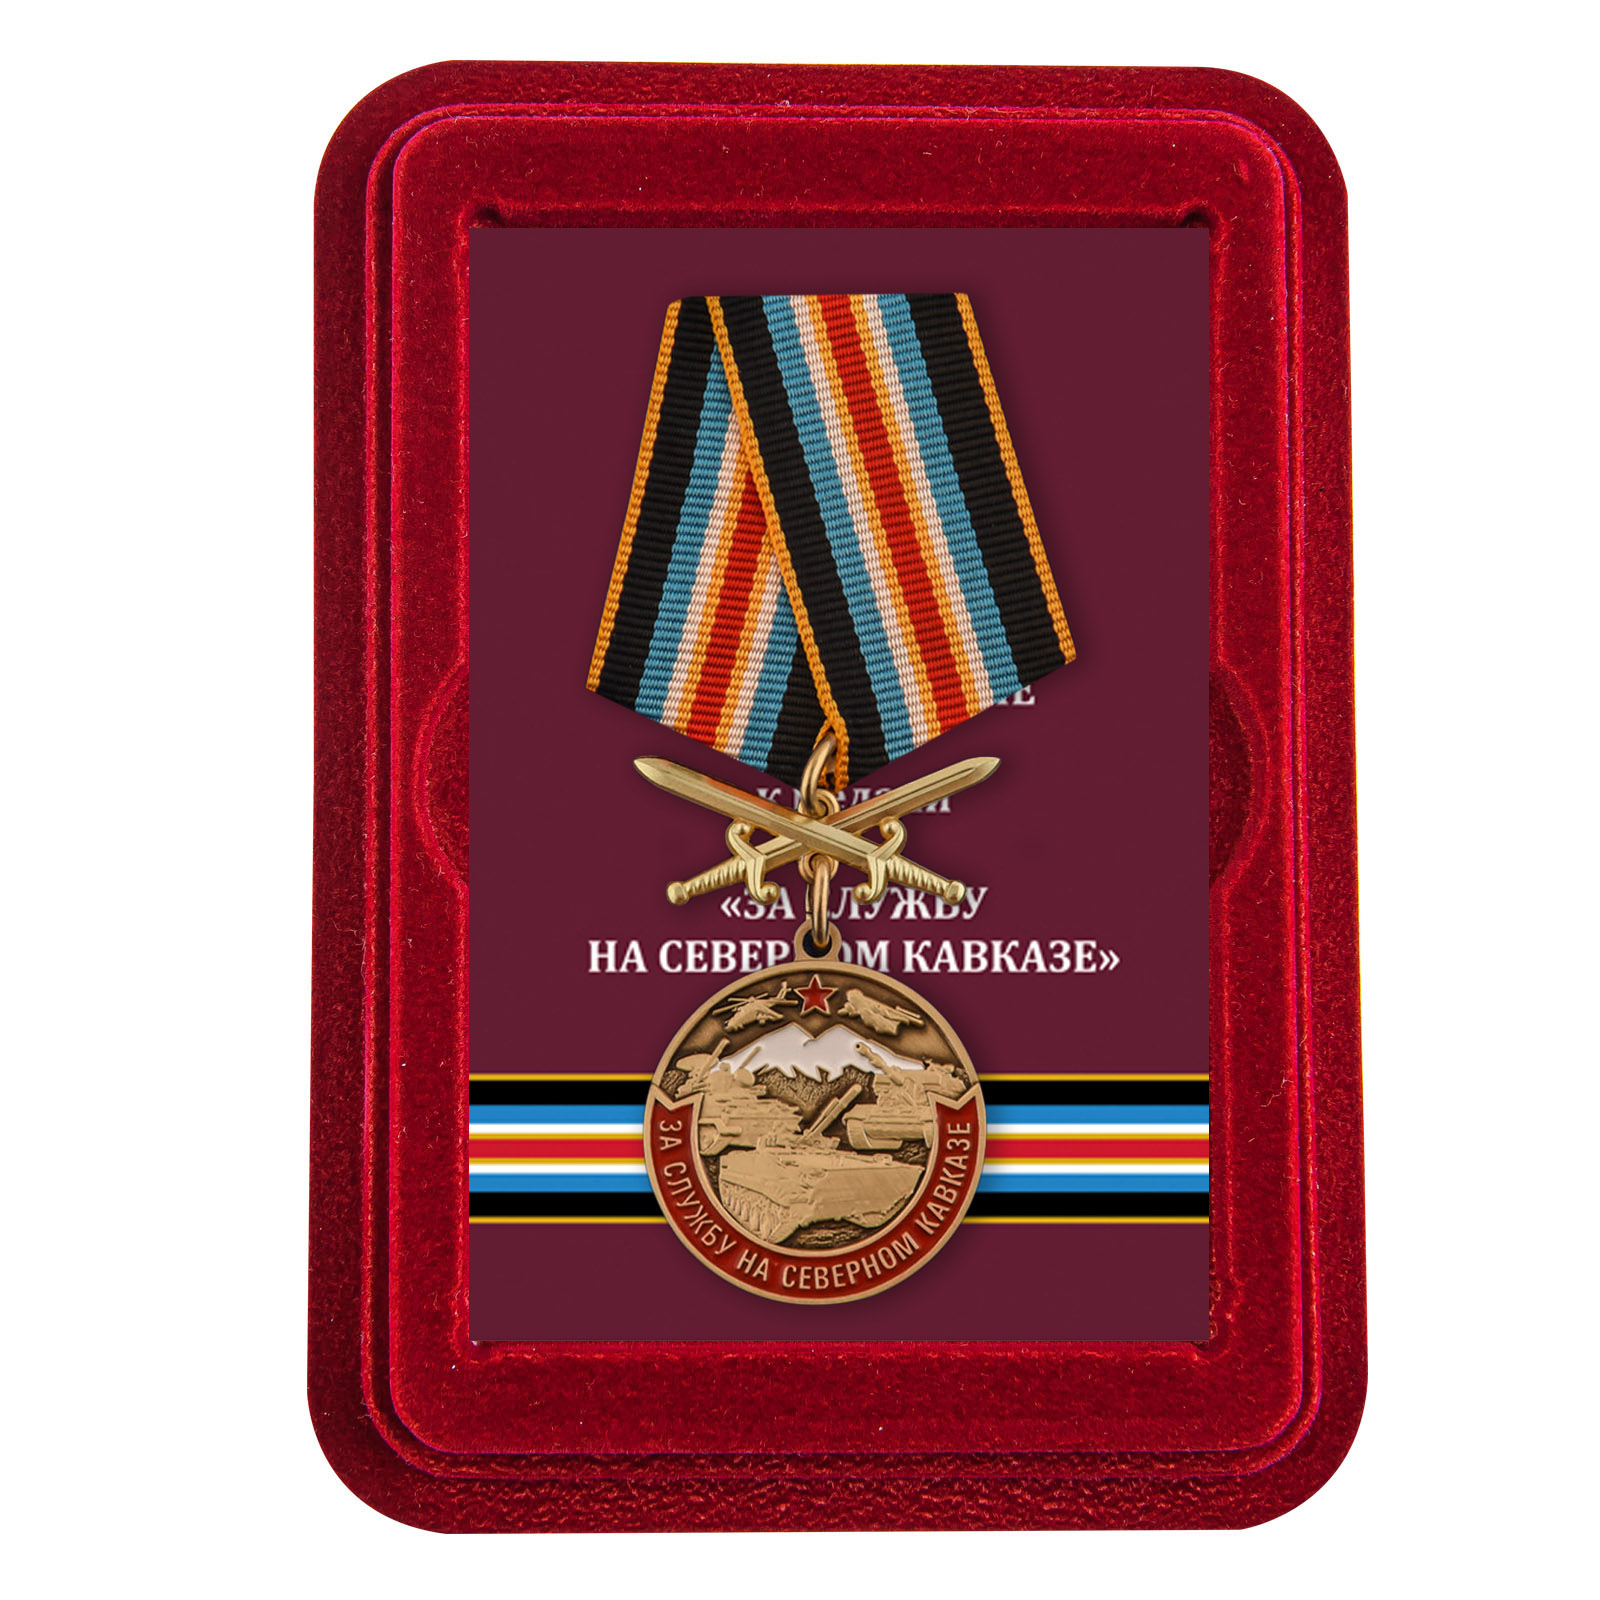 Купить медаль За службу на Северном Кавказе по лучшей цене